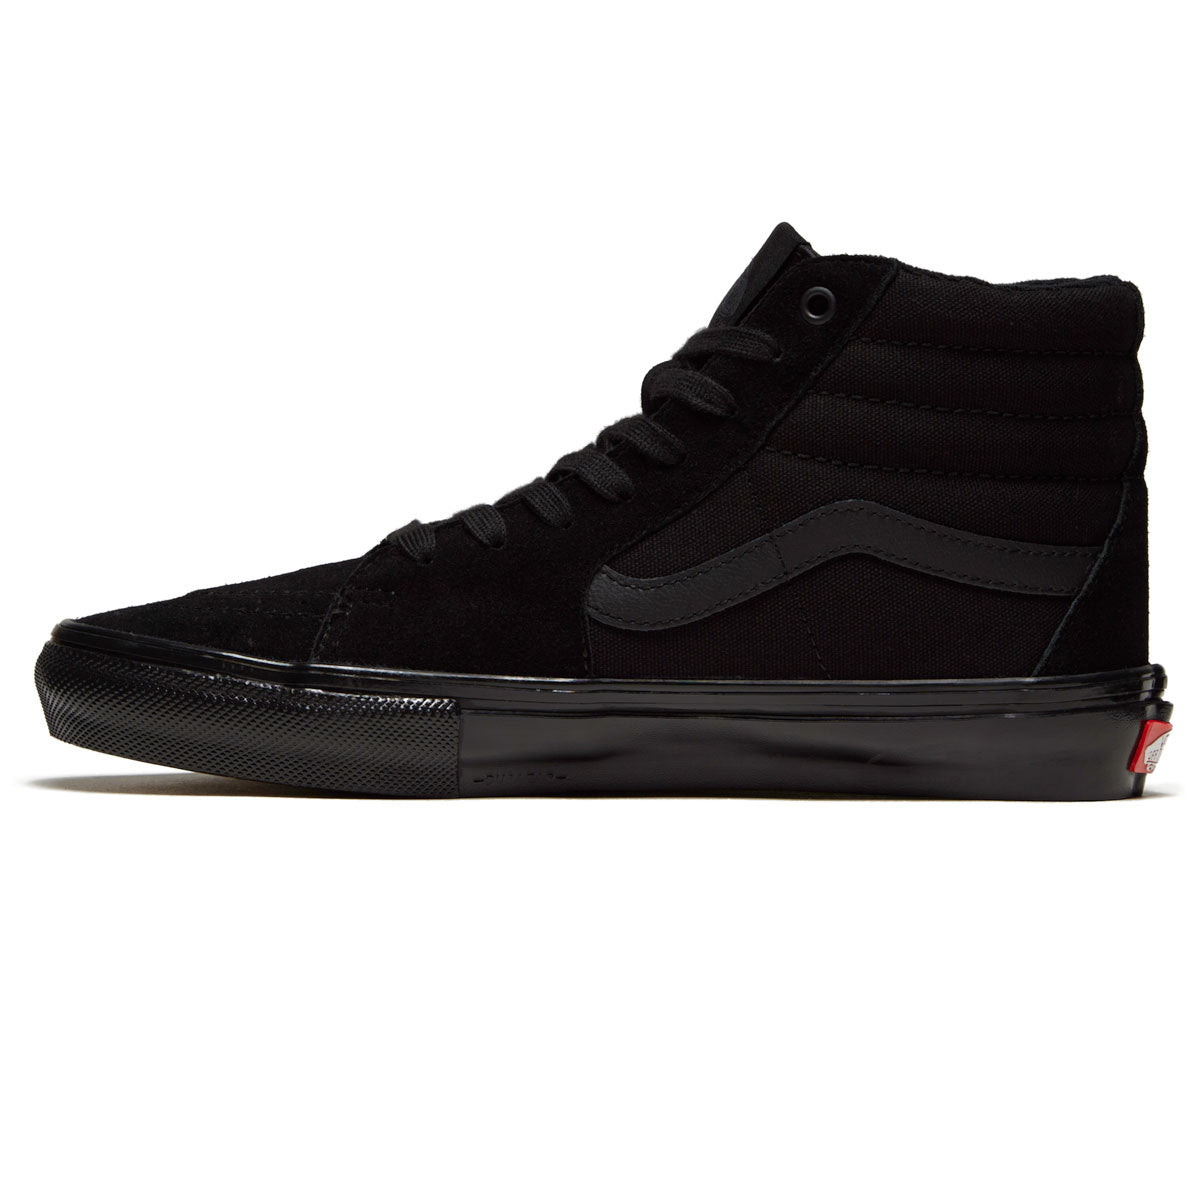 Vans Skate Sk8-hi Shoes - Black/Black image 2